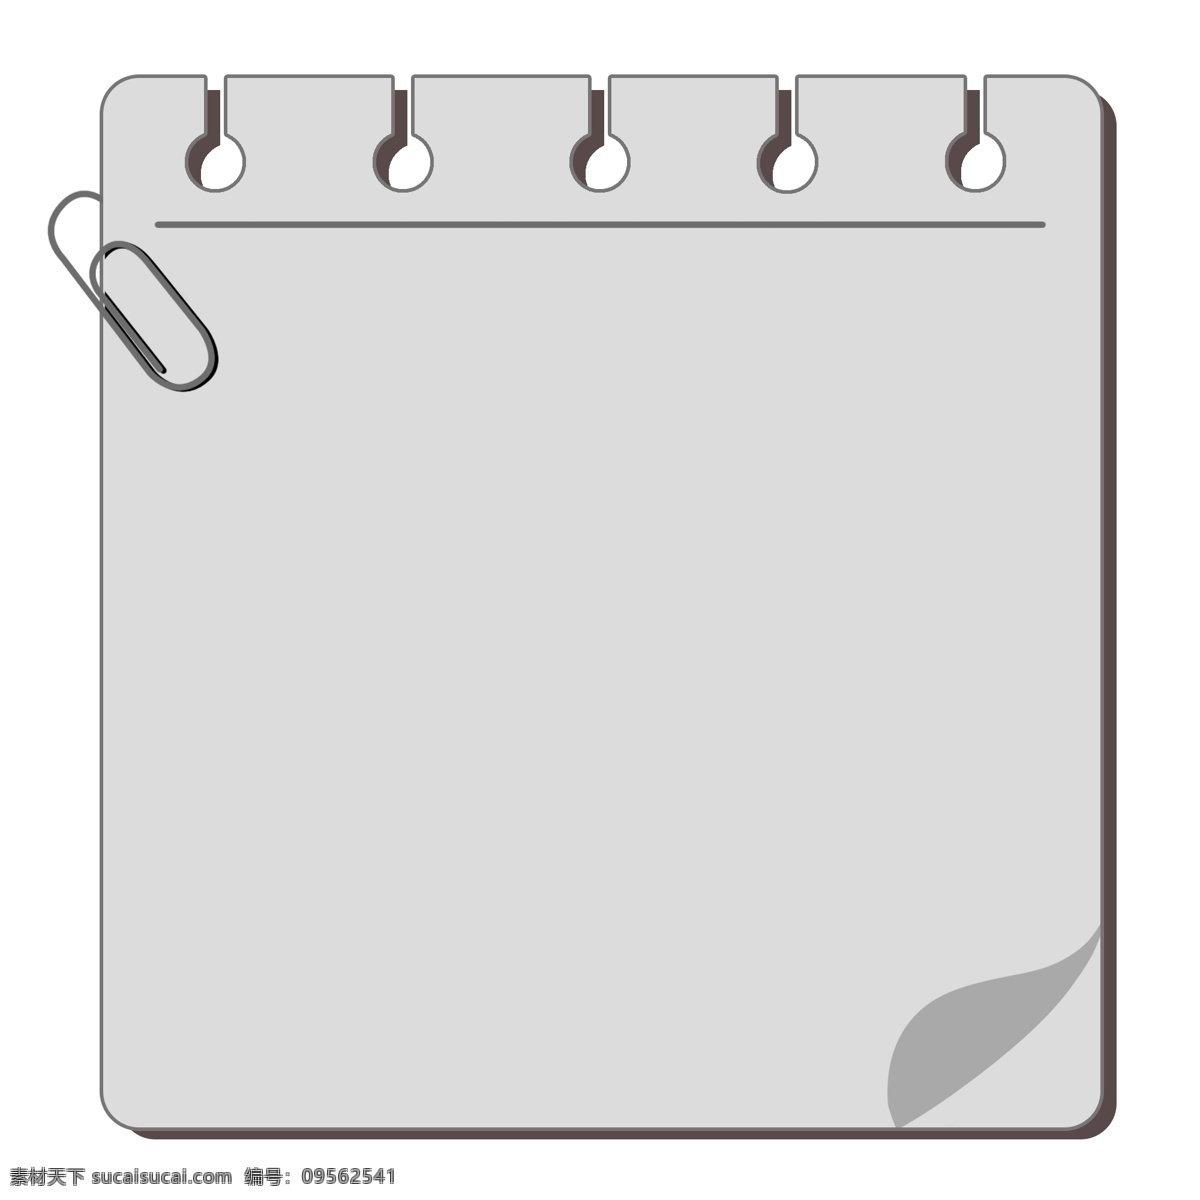 灰色 正方形 提示 框 提示框 回形针 办公用品